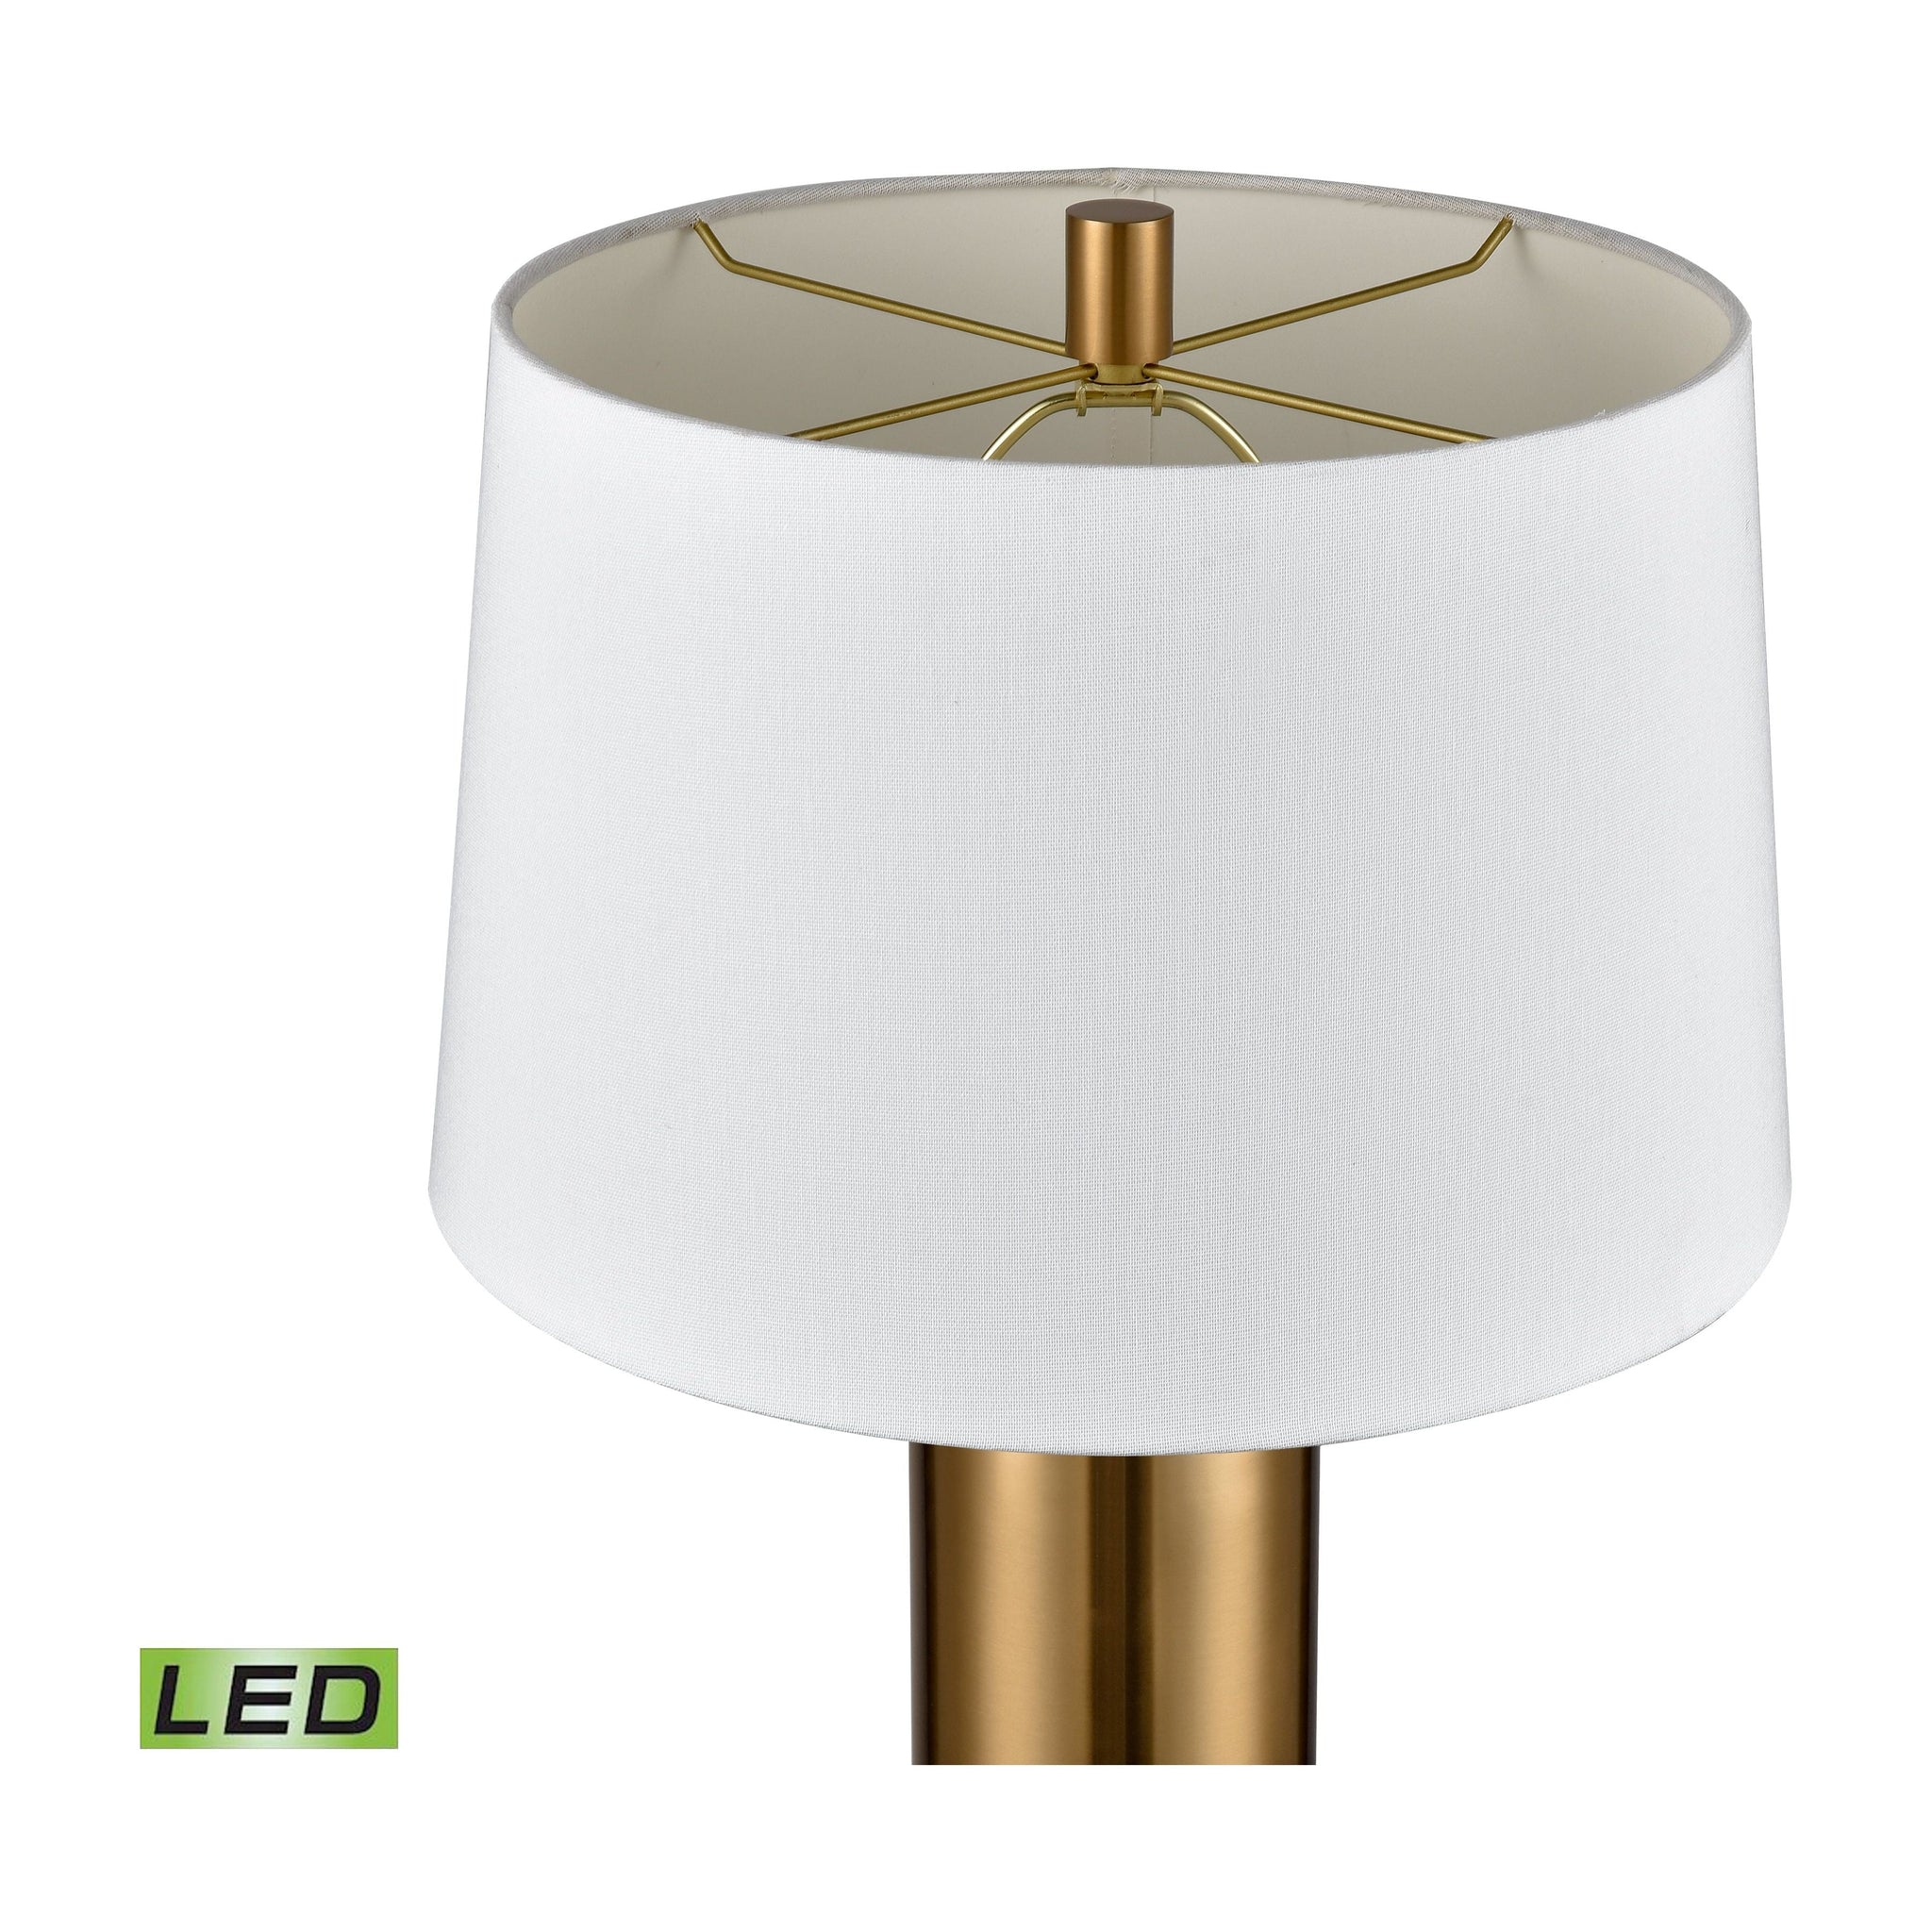 Elishaw 30" High 1-Light Table Lamp